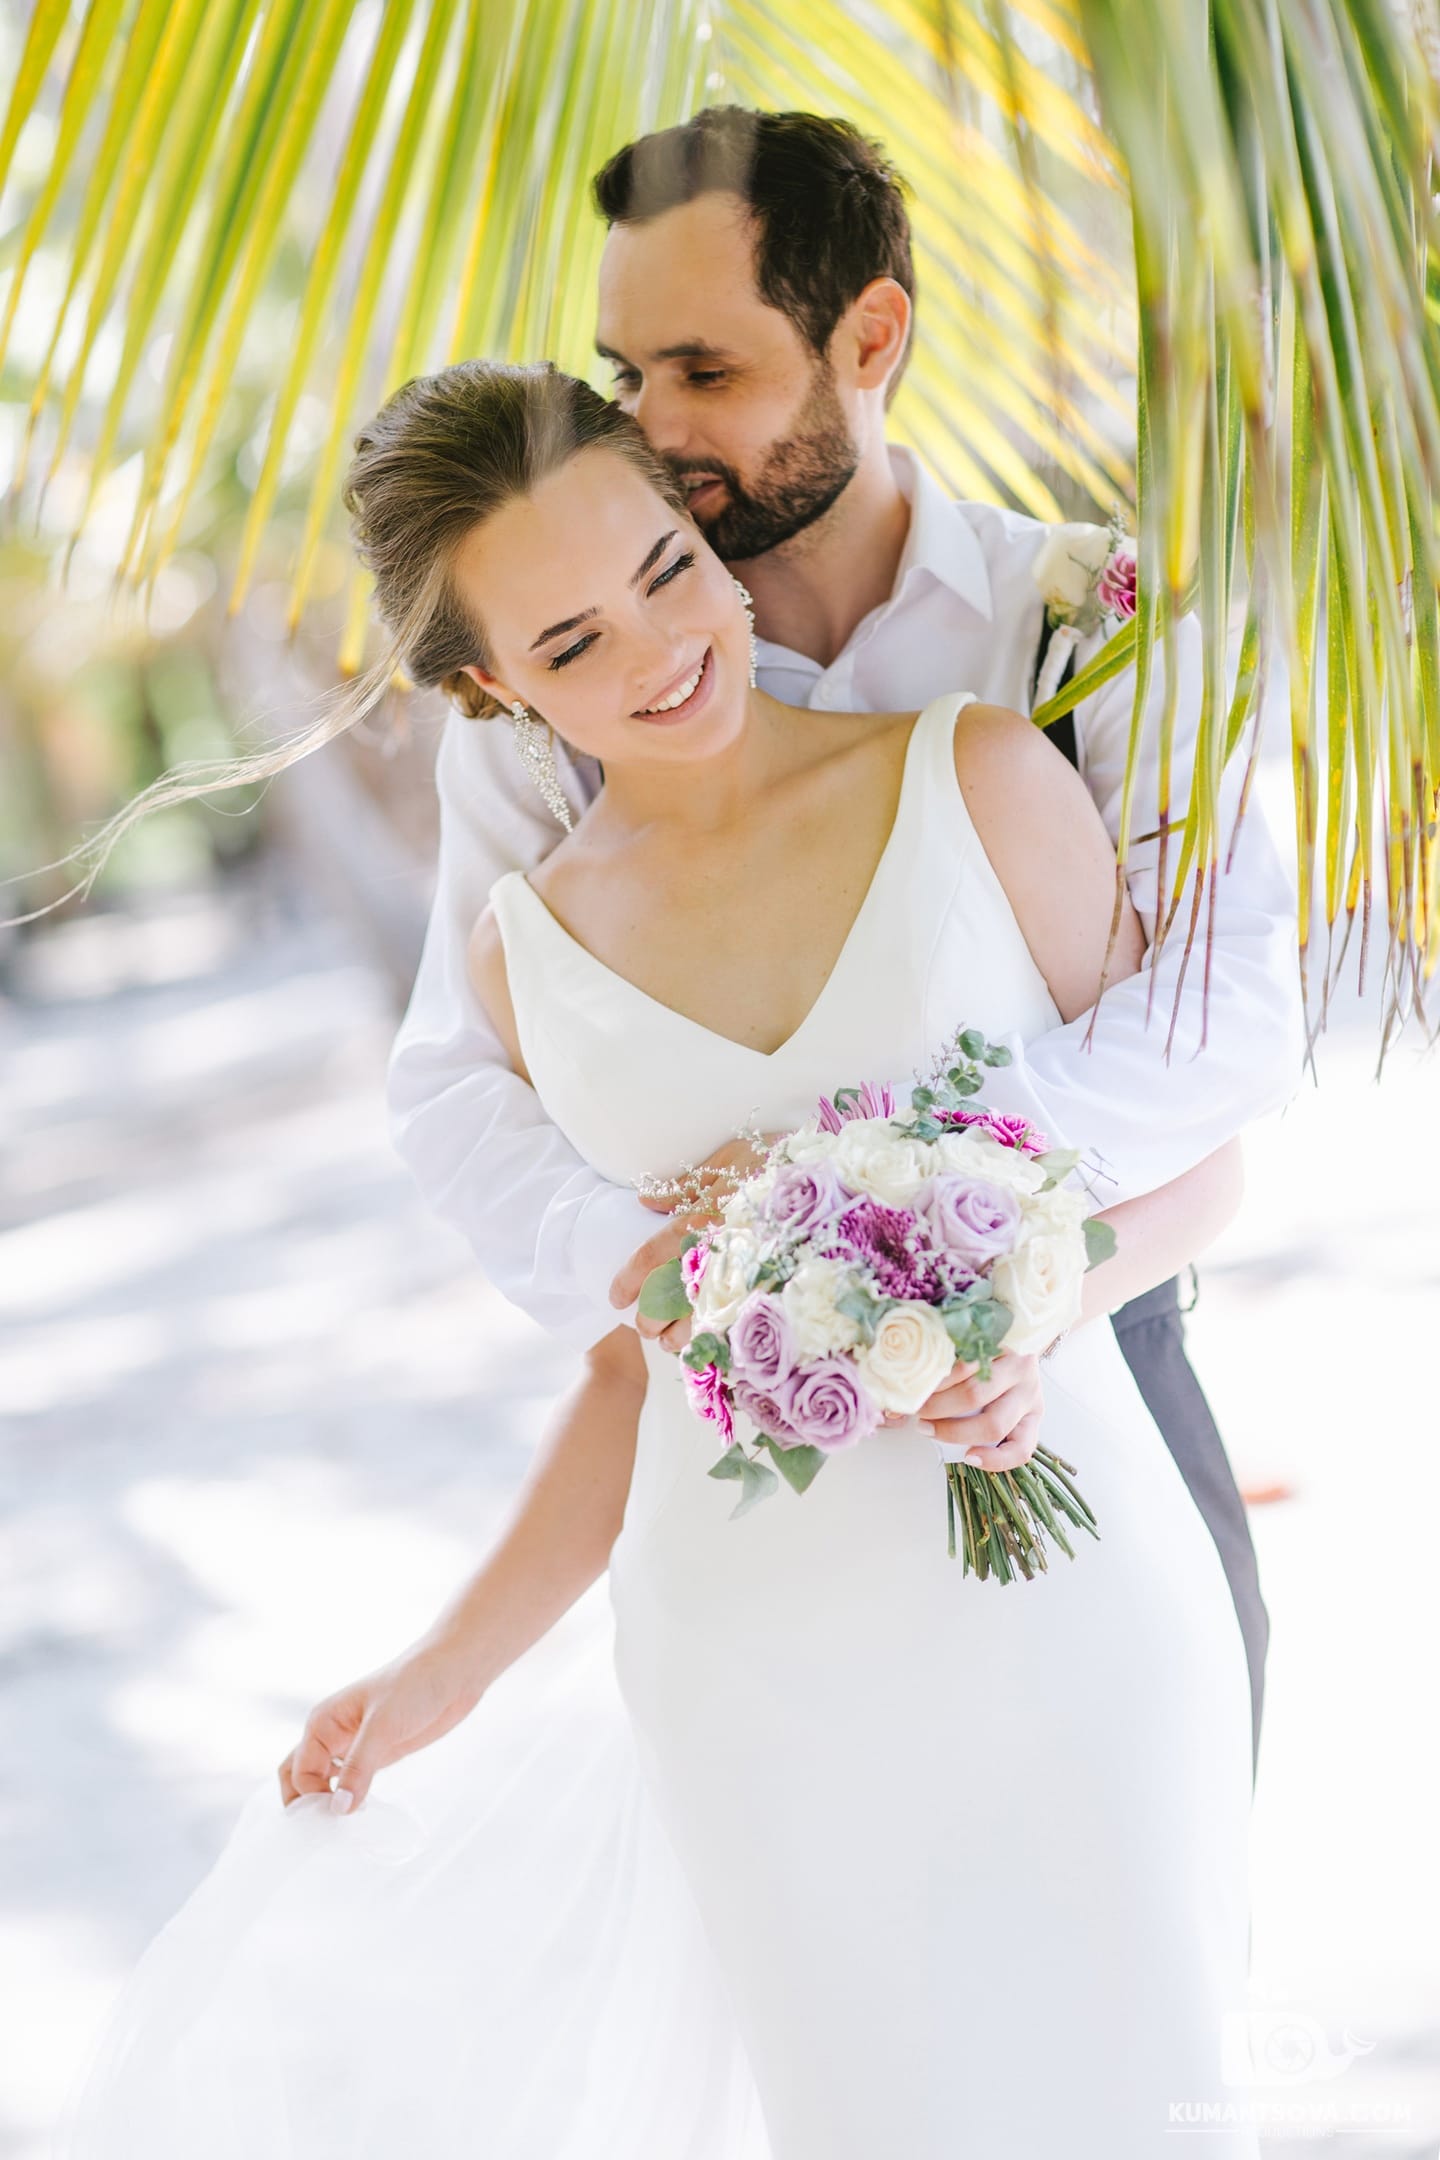 супруги обнимаються под пальмой